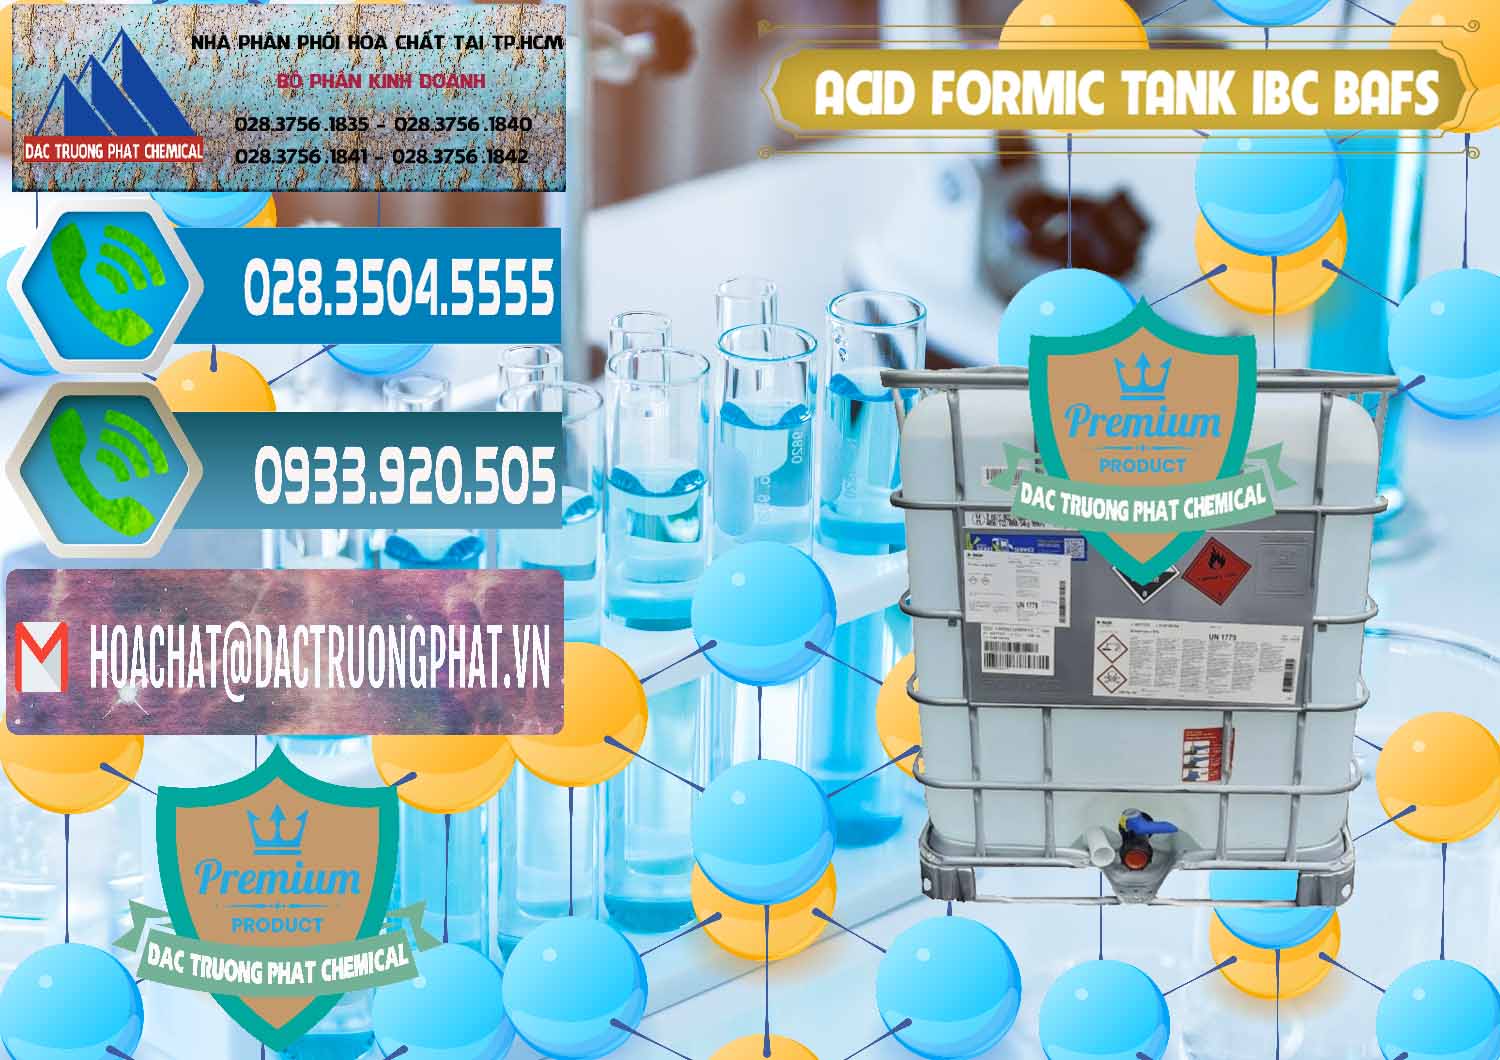 Cty bán - cung ứng Acid Formic - Axit Formic Tank - Bồn IBC BASF Đức - 0366 - Công ty cung cấp _ phân phối hóa chất tại TP.HCM - congtyhoachat.net